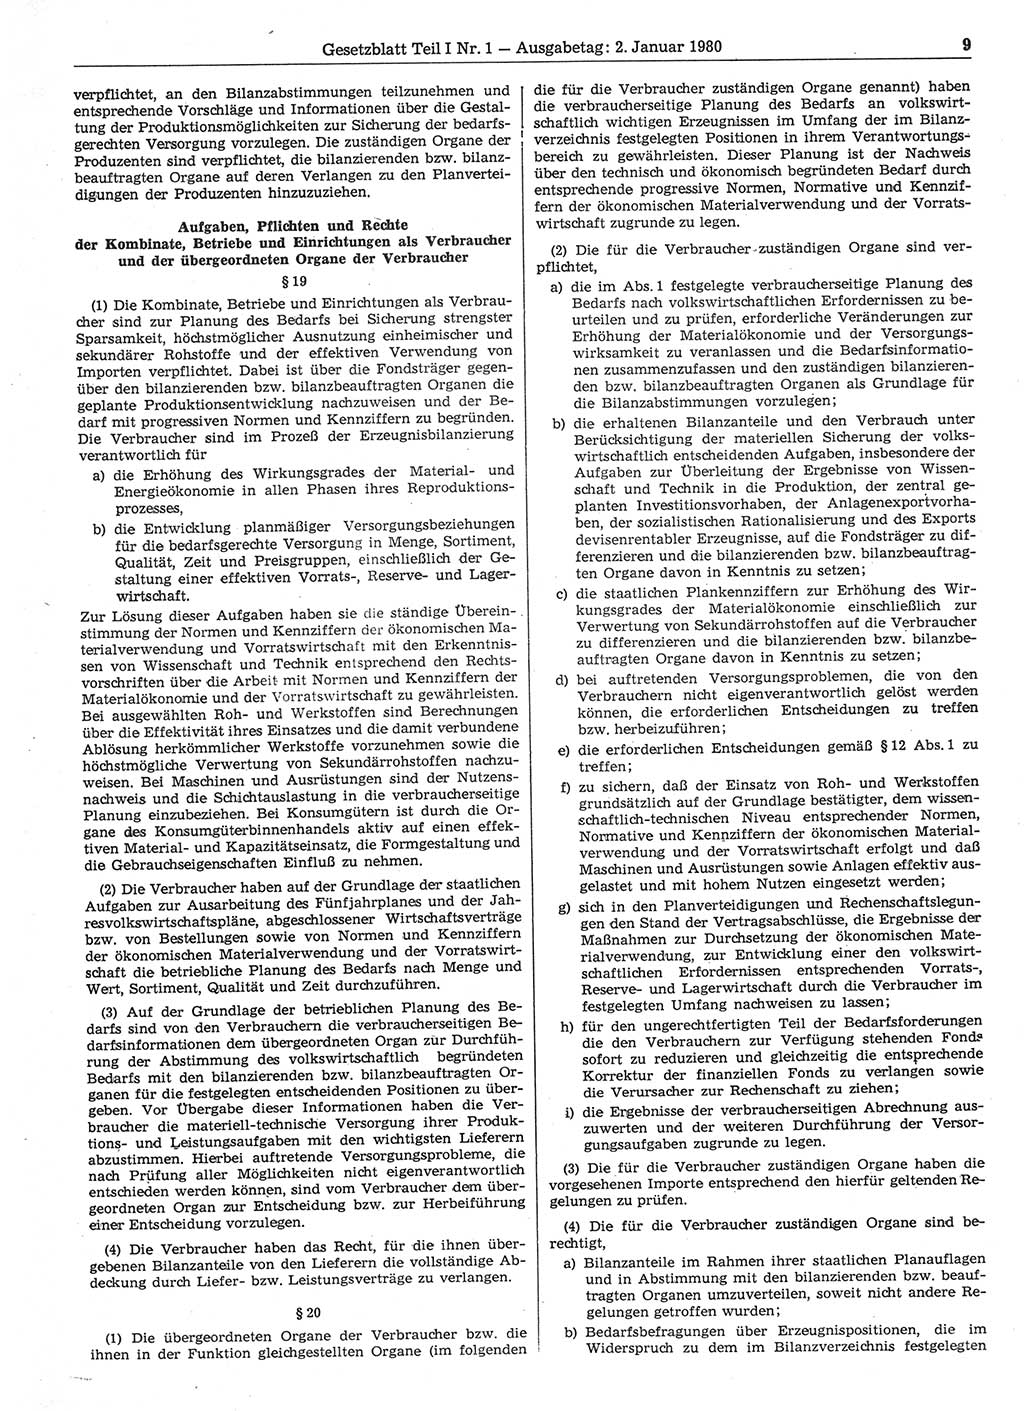 Gesetzblatt (GBl.) der Deutschen Demokratischen Republik (DDR) Teil Ⅰ 1980, Seite 9 (GBl. DDR Ⅰ 1980, S. 9)